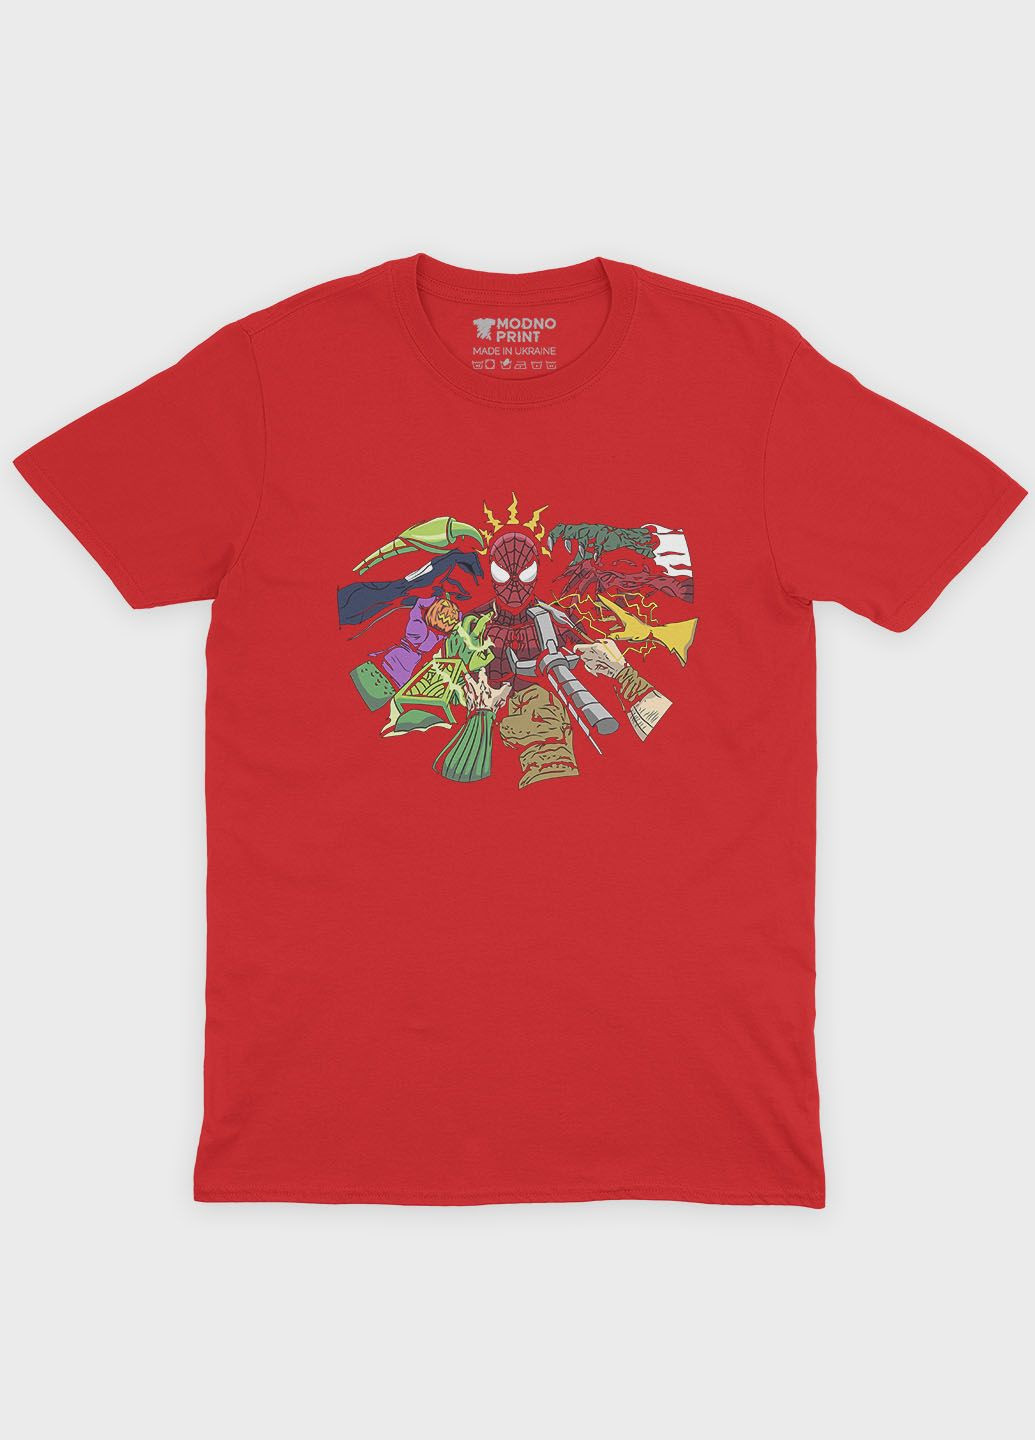 Красная демисезонная футболка для мальчика с принтом супергероя - человек-паук (ts001-1-sre-006-014-014-b) Modno